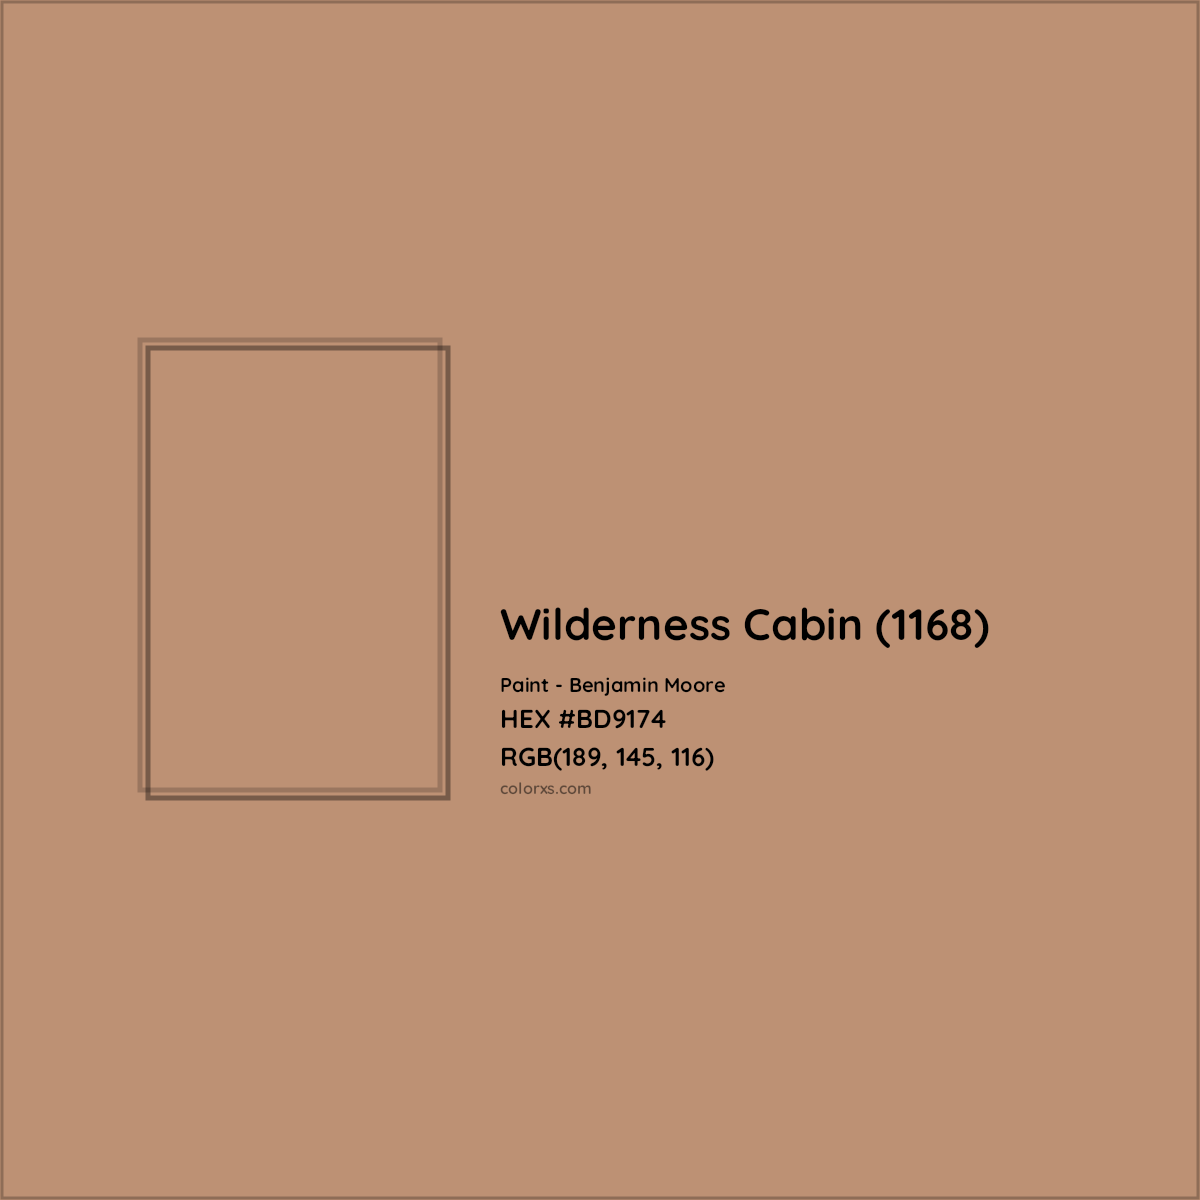 HEX #BD9174 Wilderness Cabin (1168) Paint Benjamin Moore - Color Code